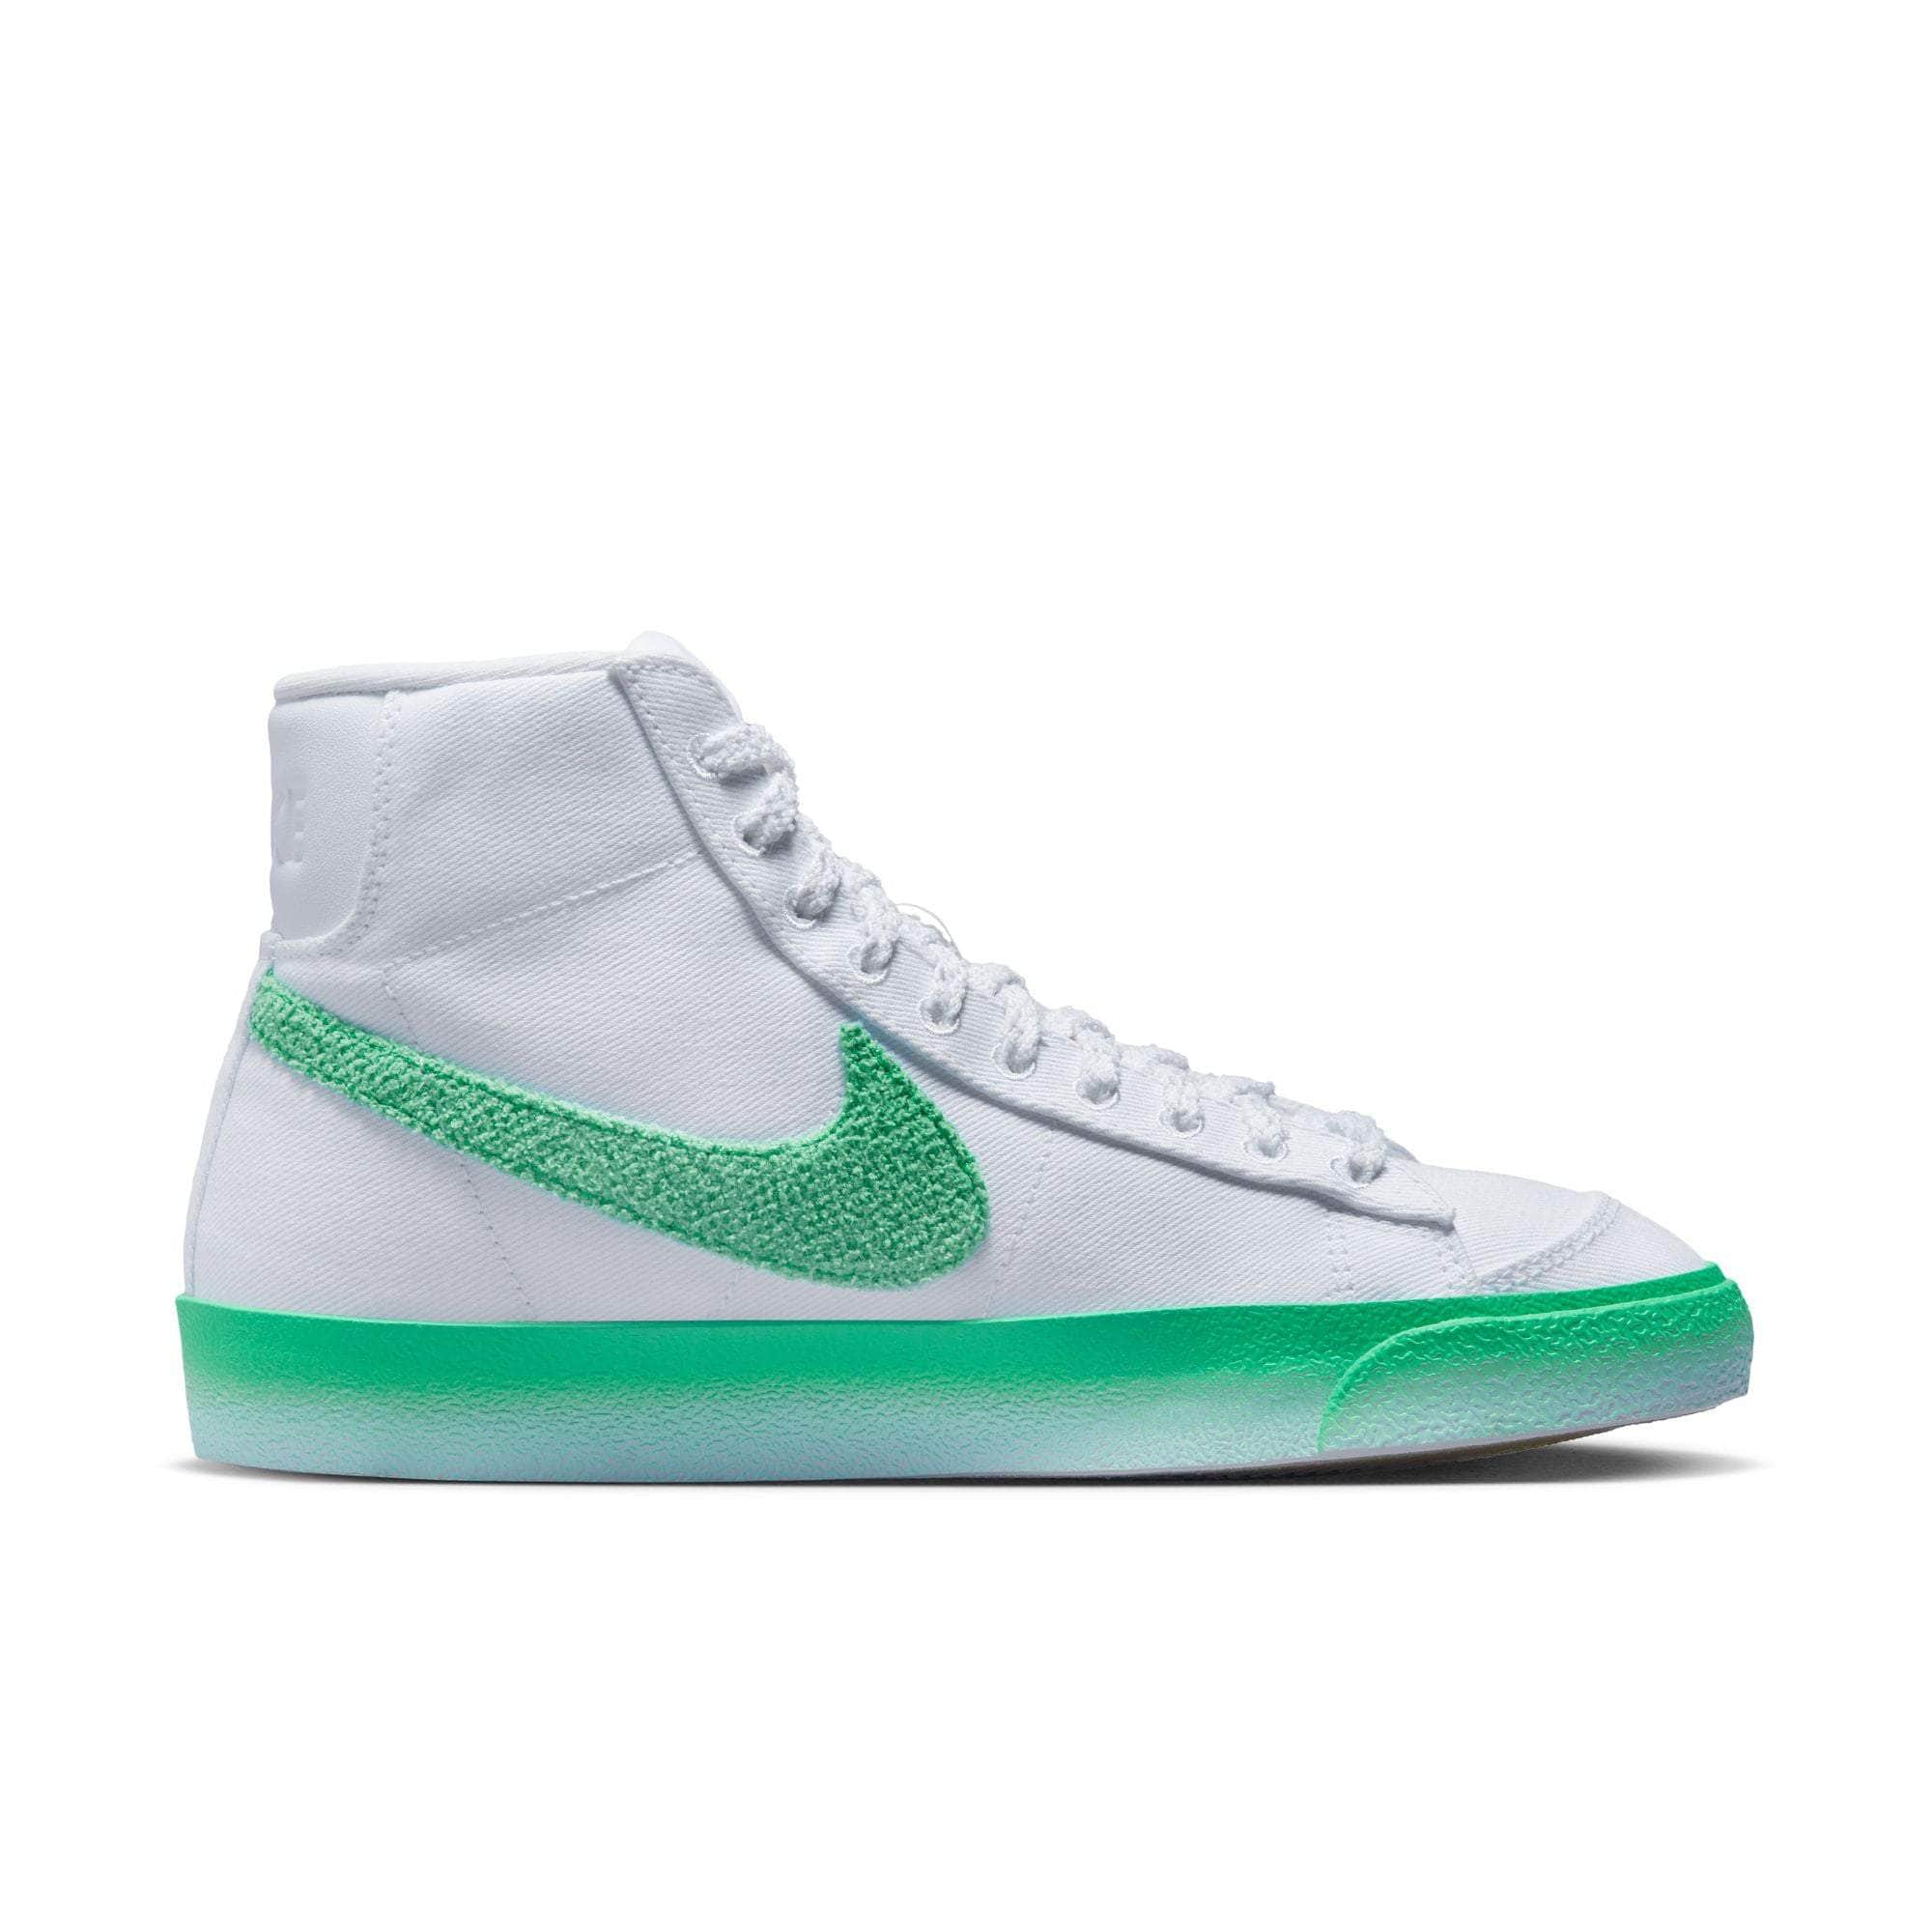 NIKE FOOTWEAR Nike Blazer Mid '77 "Green Fade" - Women's